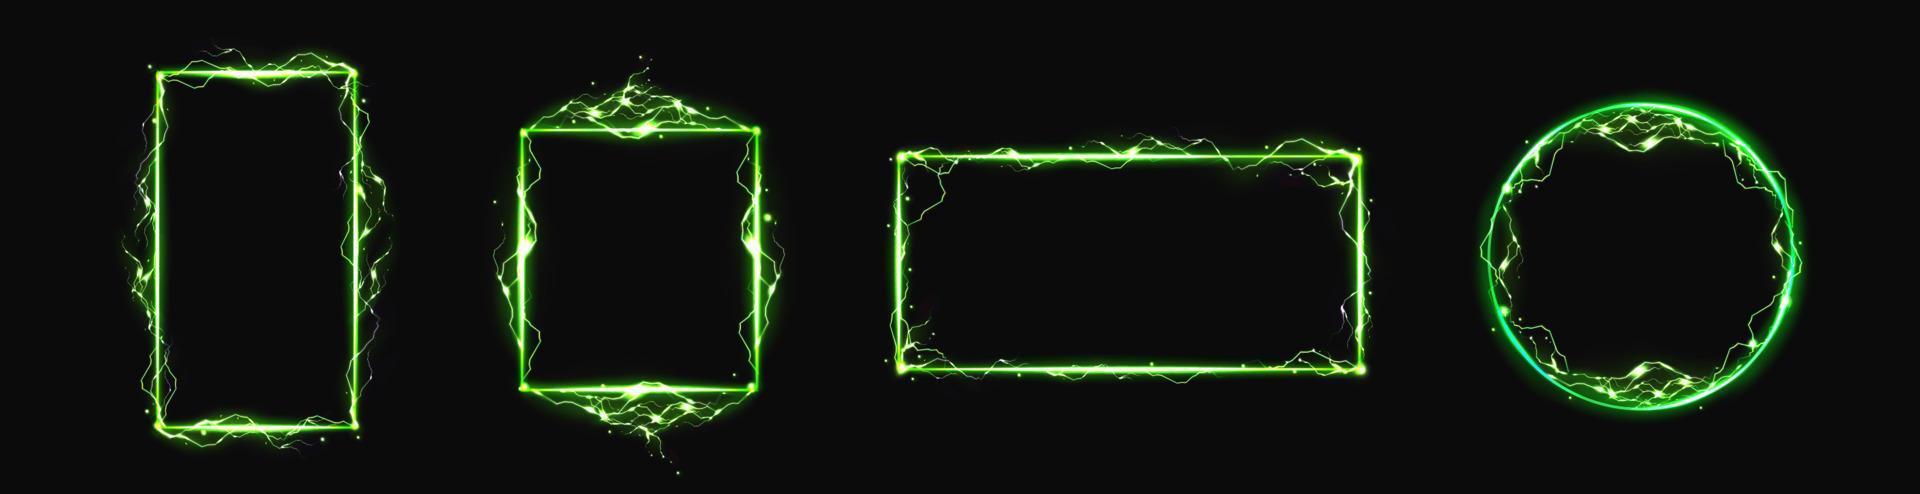 quadros de raios elétricos vetoriais verdes vetor